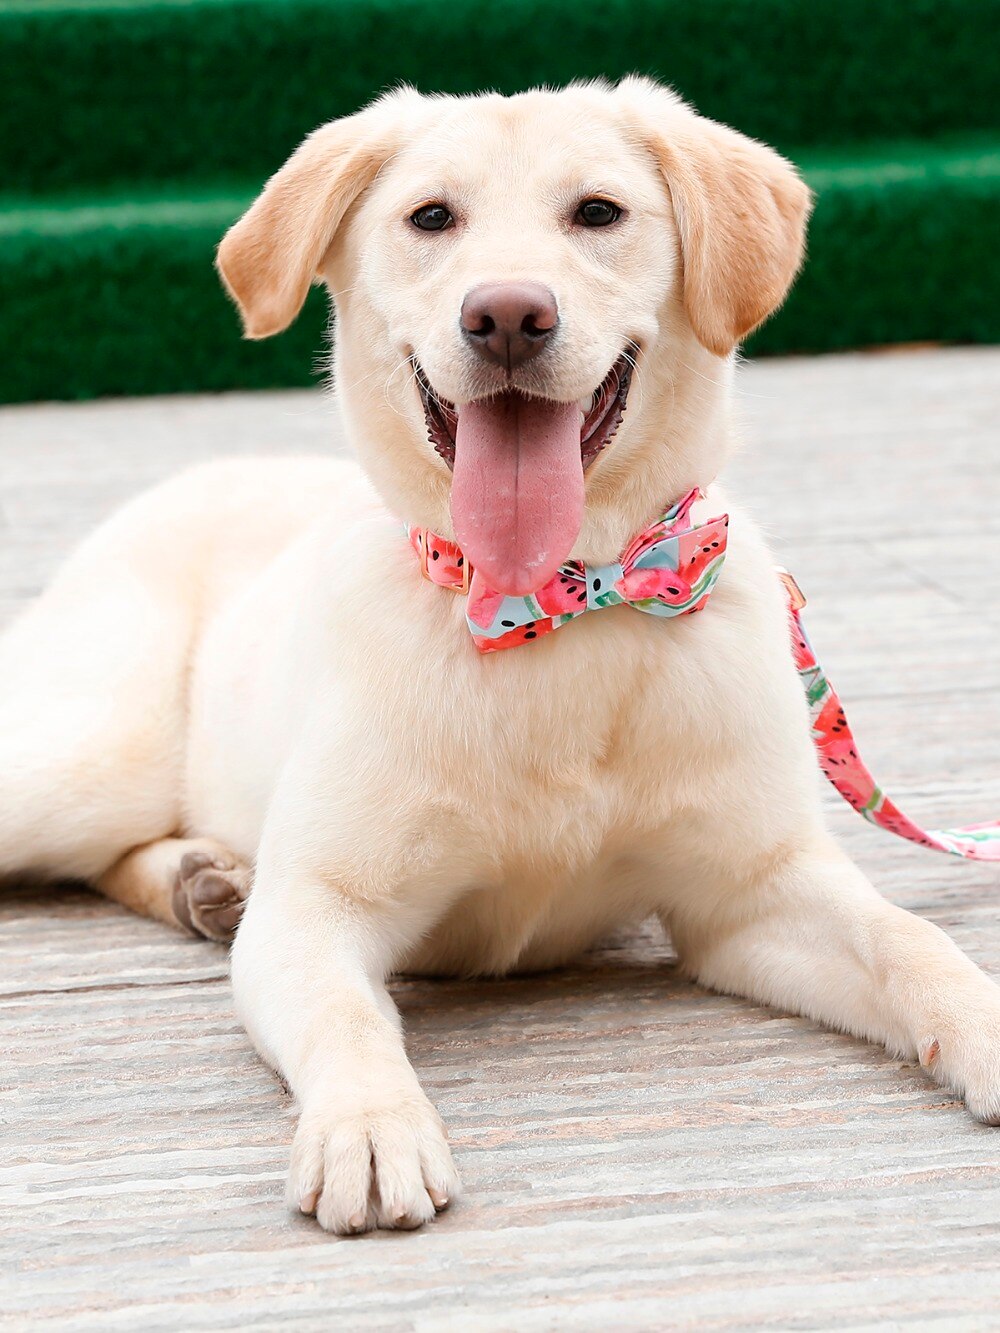 Collier à motif de pastèque pour chien Accessoire chien Collier chien couleur: Rose